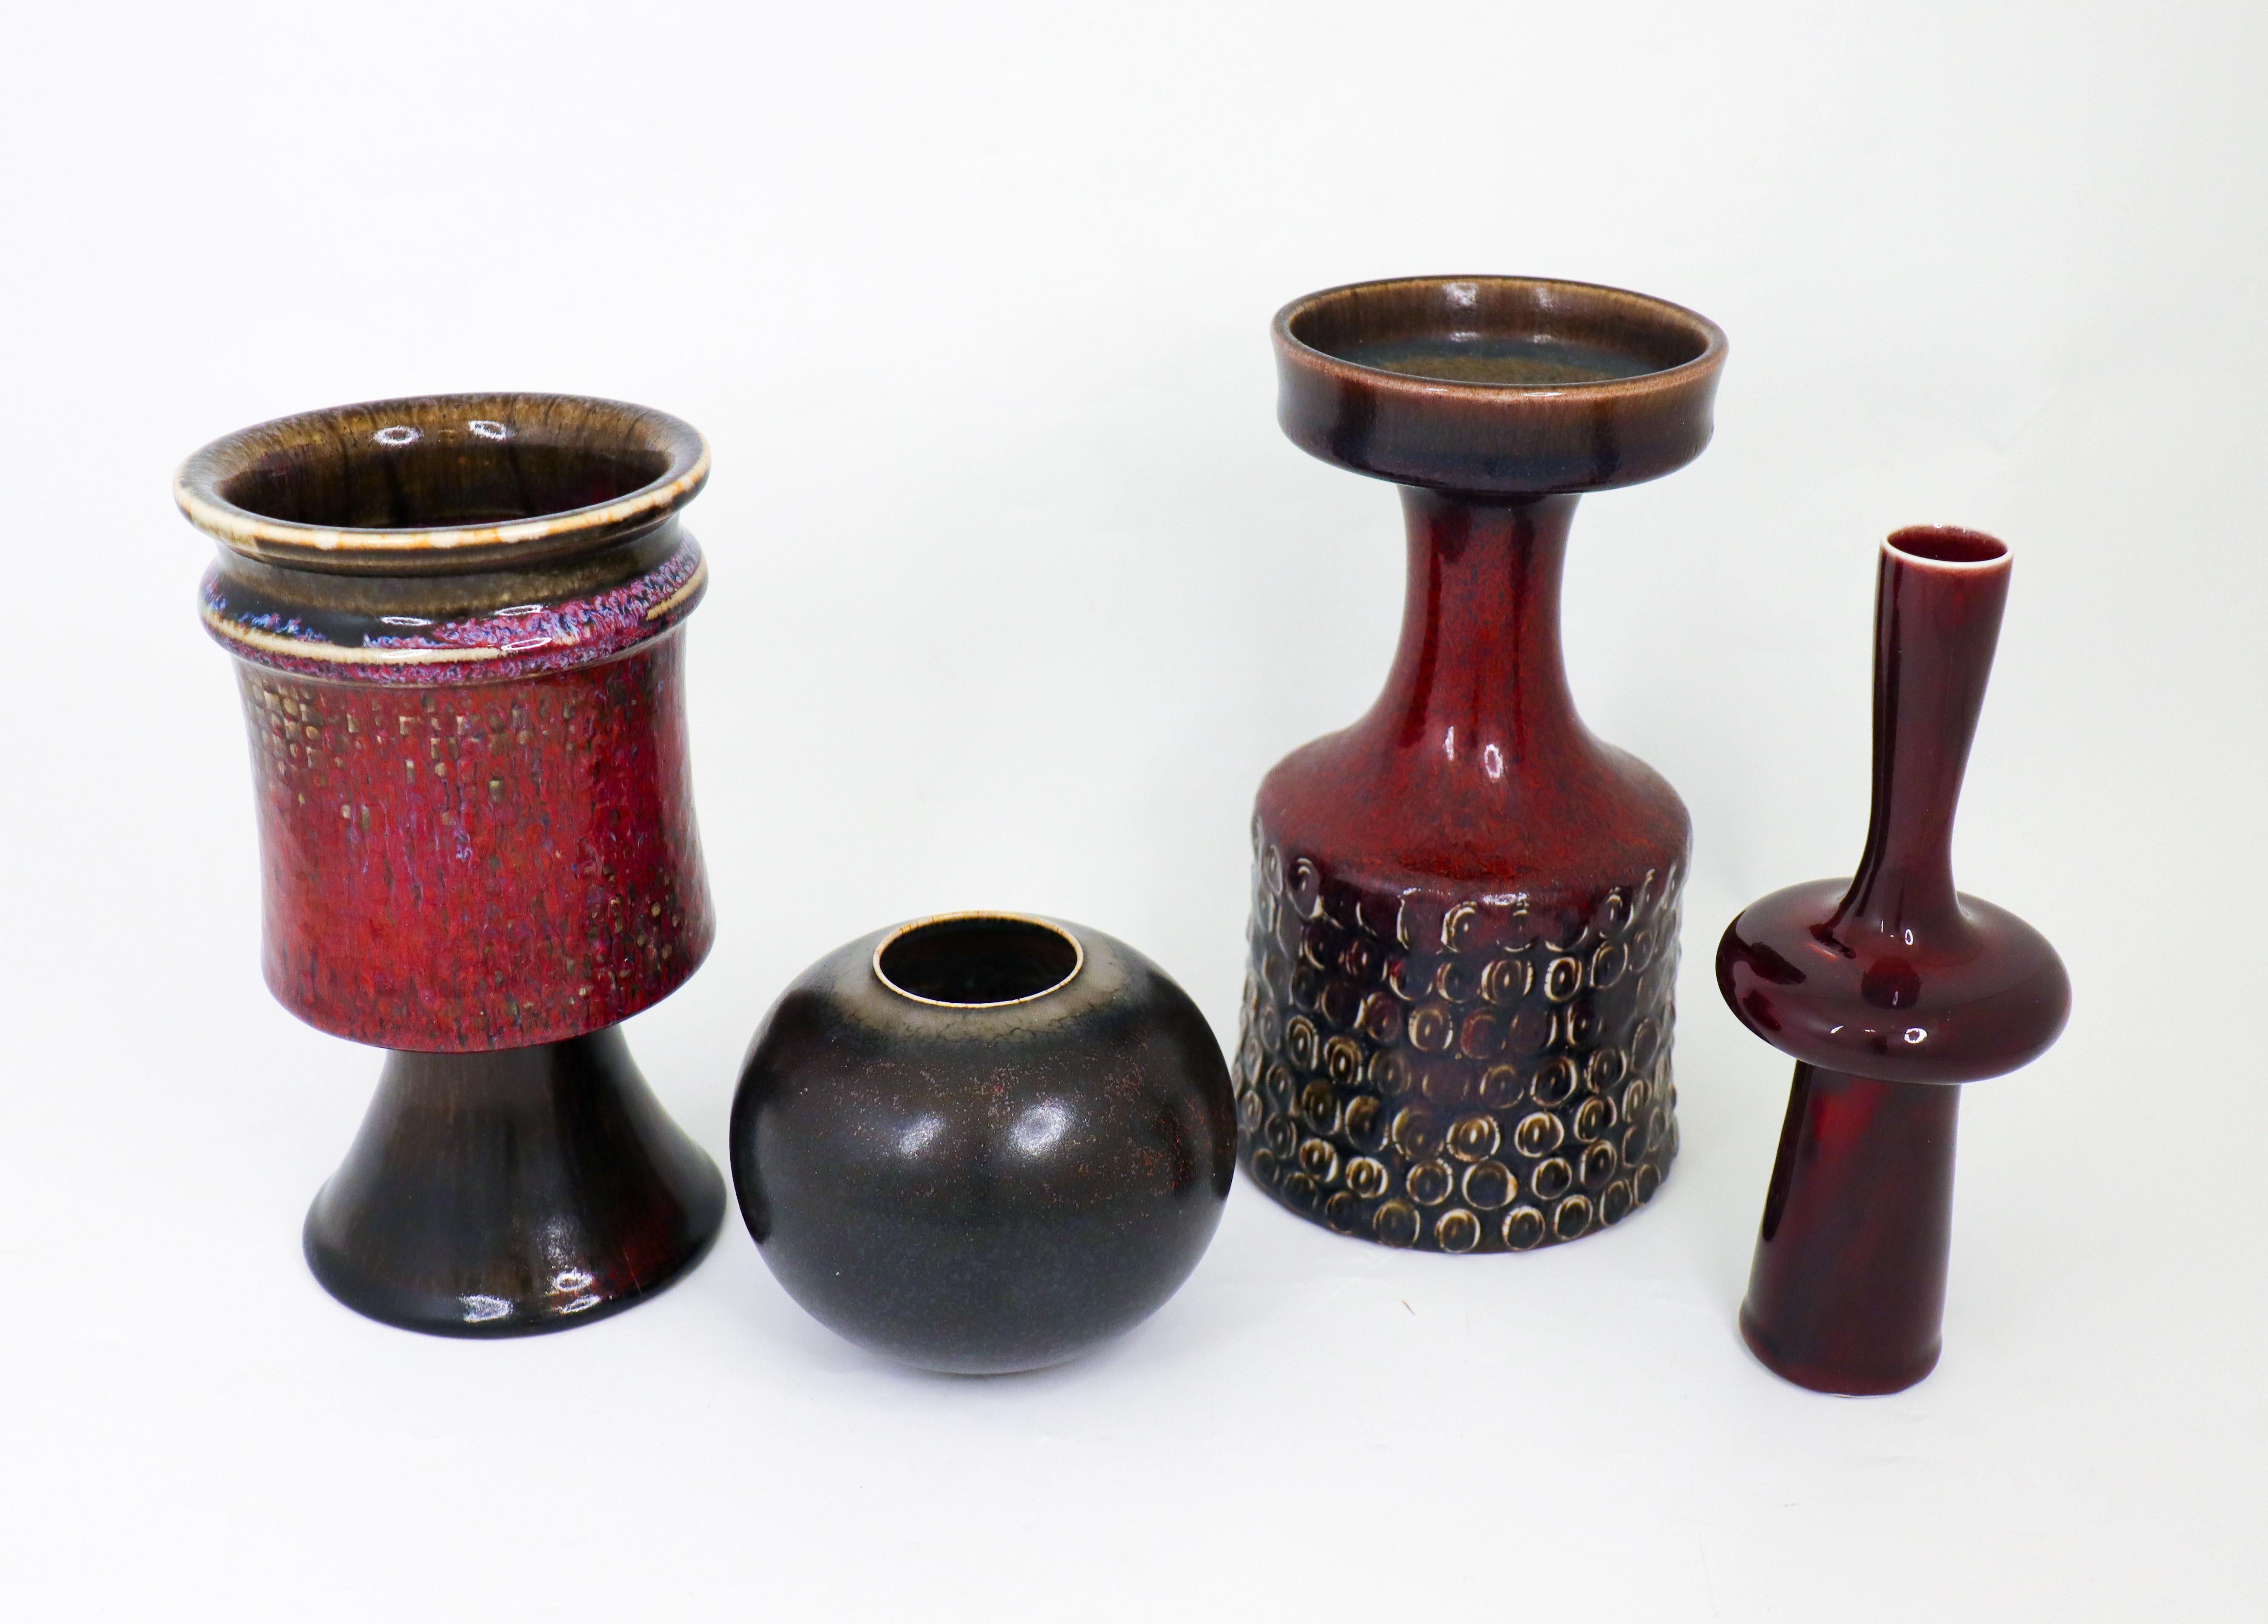 Eine Gruppe von vier Vasen, entworfen von Stig Lindberg bei Gustavsberg in den 1950er Jahren. Die Vasen sind zwischen 9,5 und 20,5 cm hoch und in ausgezeichnetem Zustand. Sie sind alle als 1. Qualität gekennzeichnet. 

Carl-Harry Stålhane ist einer